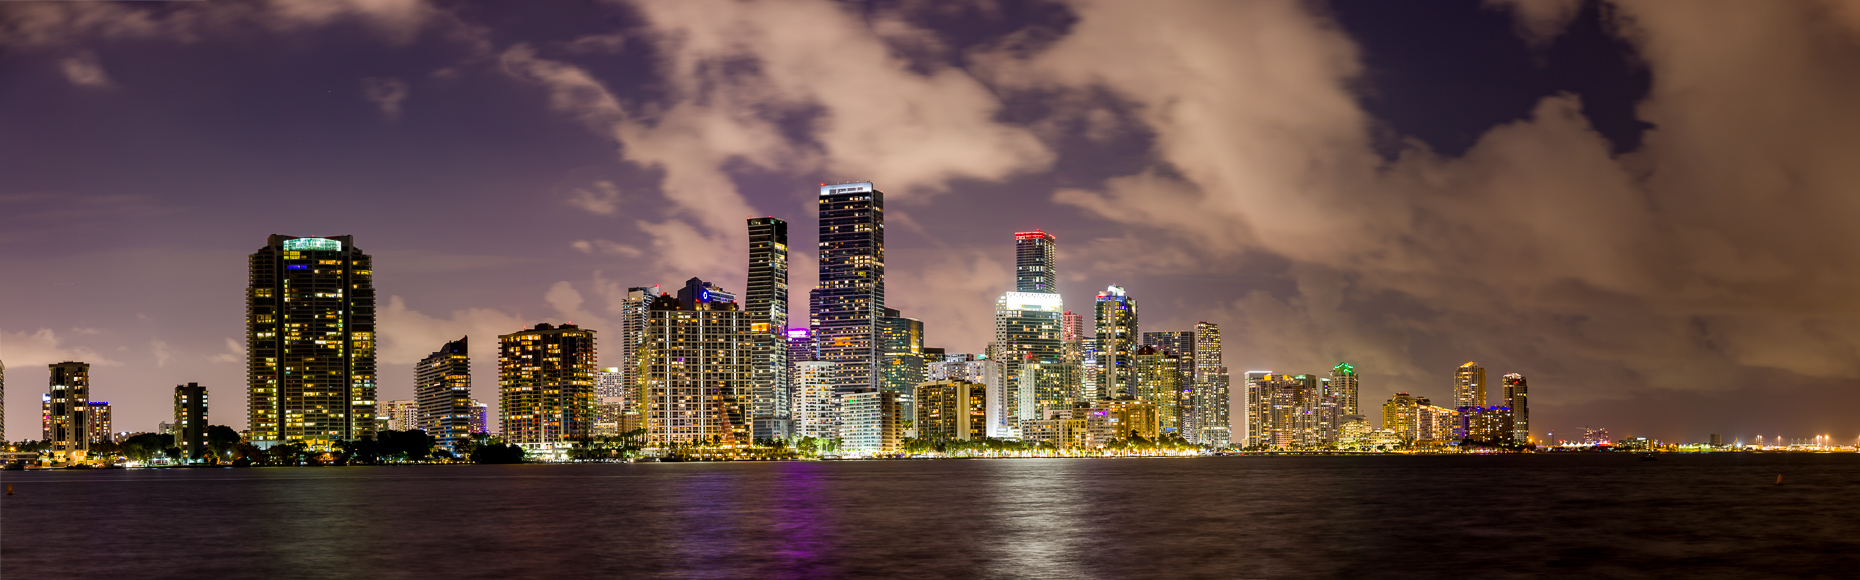 The Miami Skyline at Night